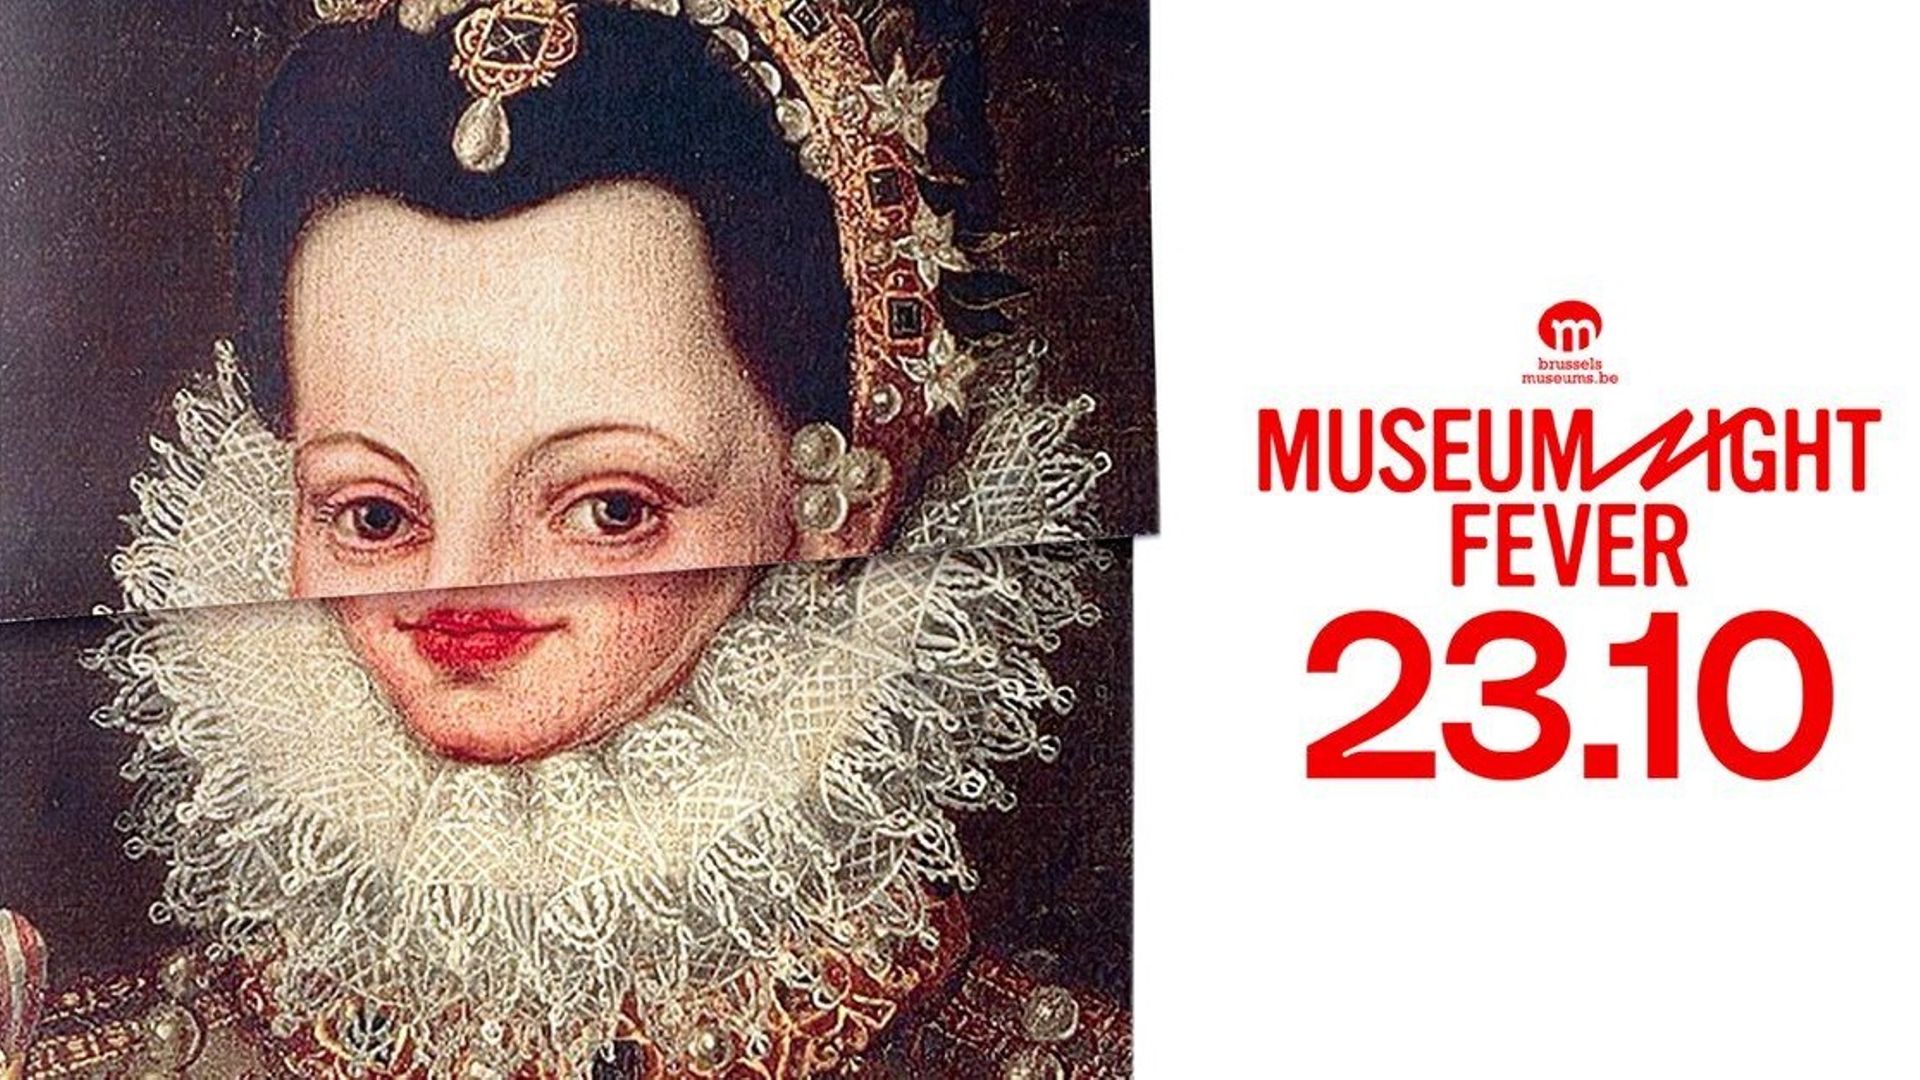 La Museum Night Fever se tiendra le soir du samedi 23 octobre dans 29 musées bruxellois